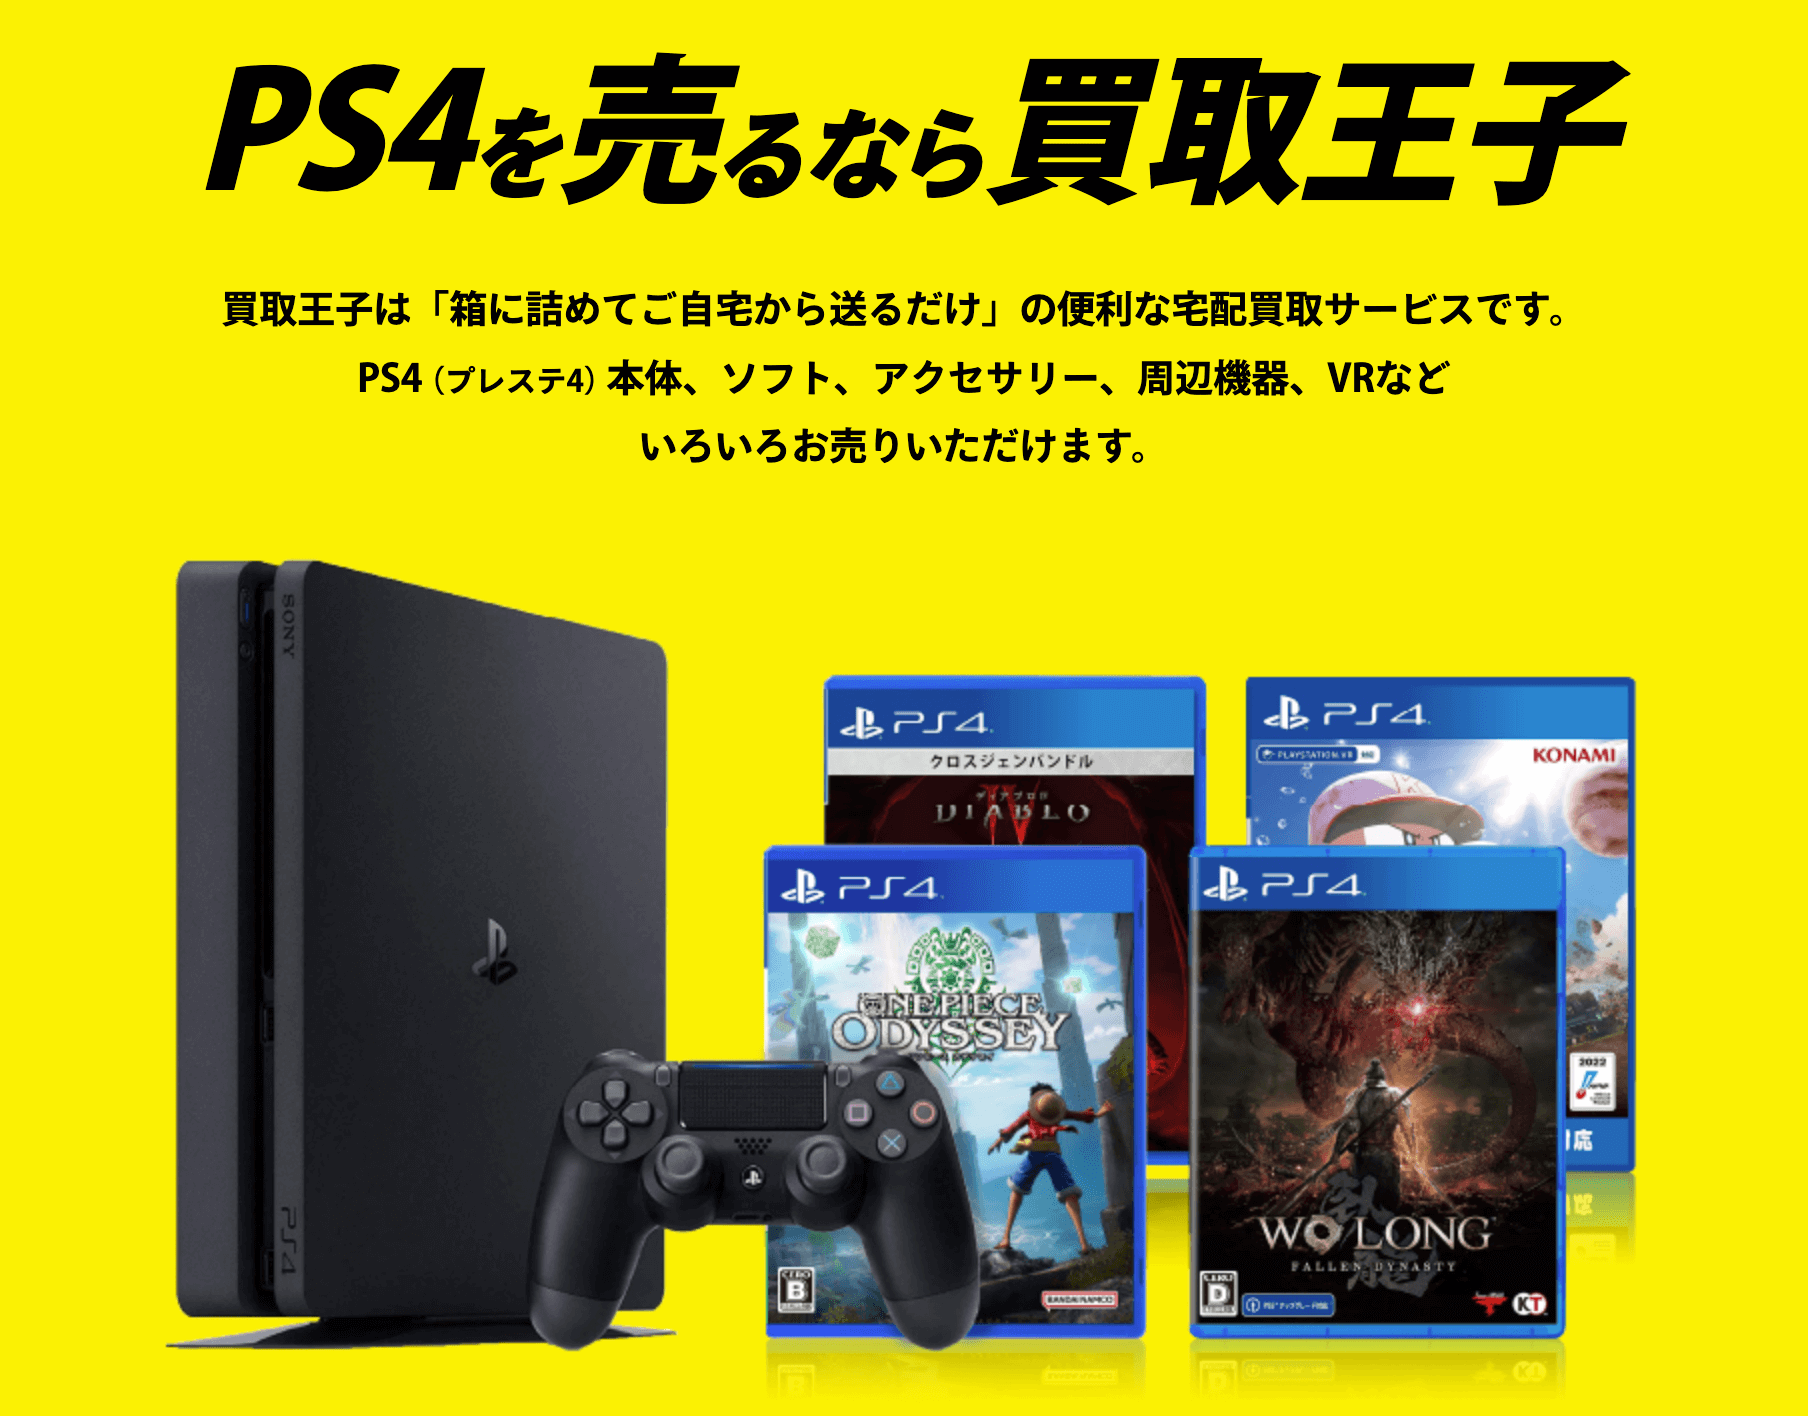 PS4 1TB ほぼ美品 今だけソフト2本つき